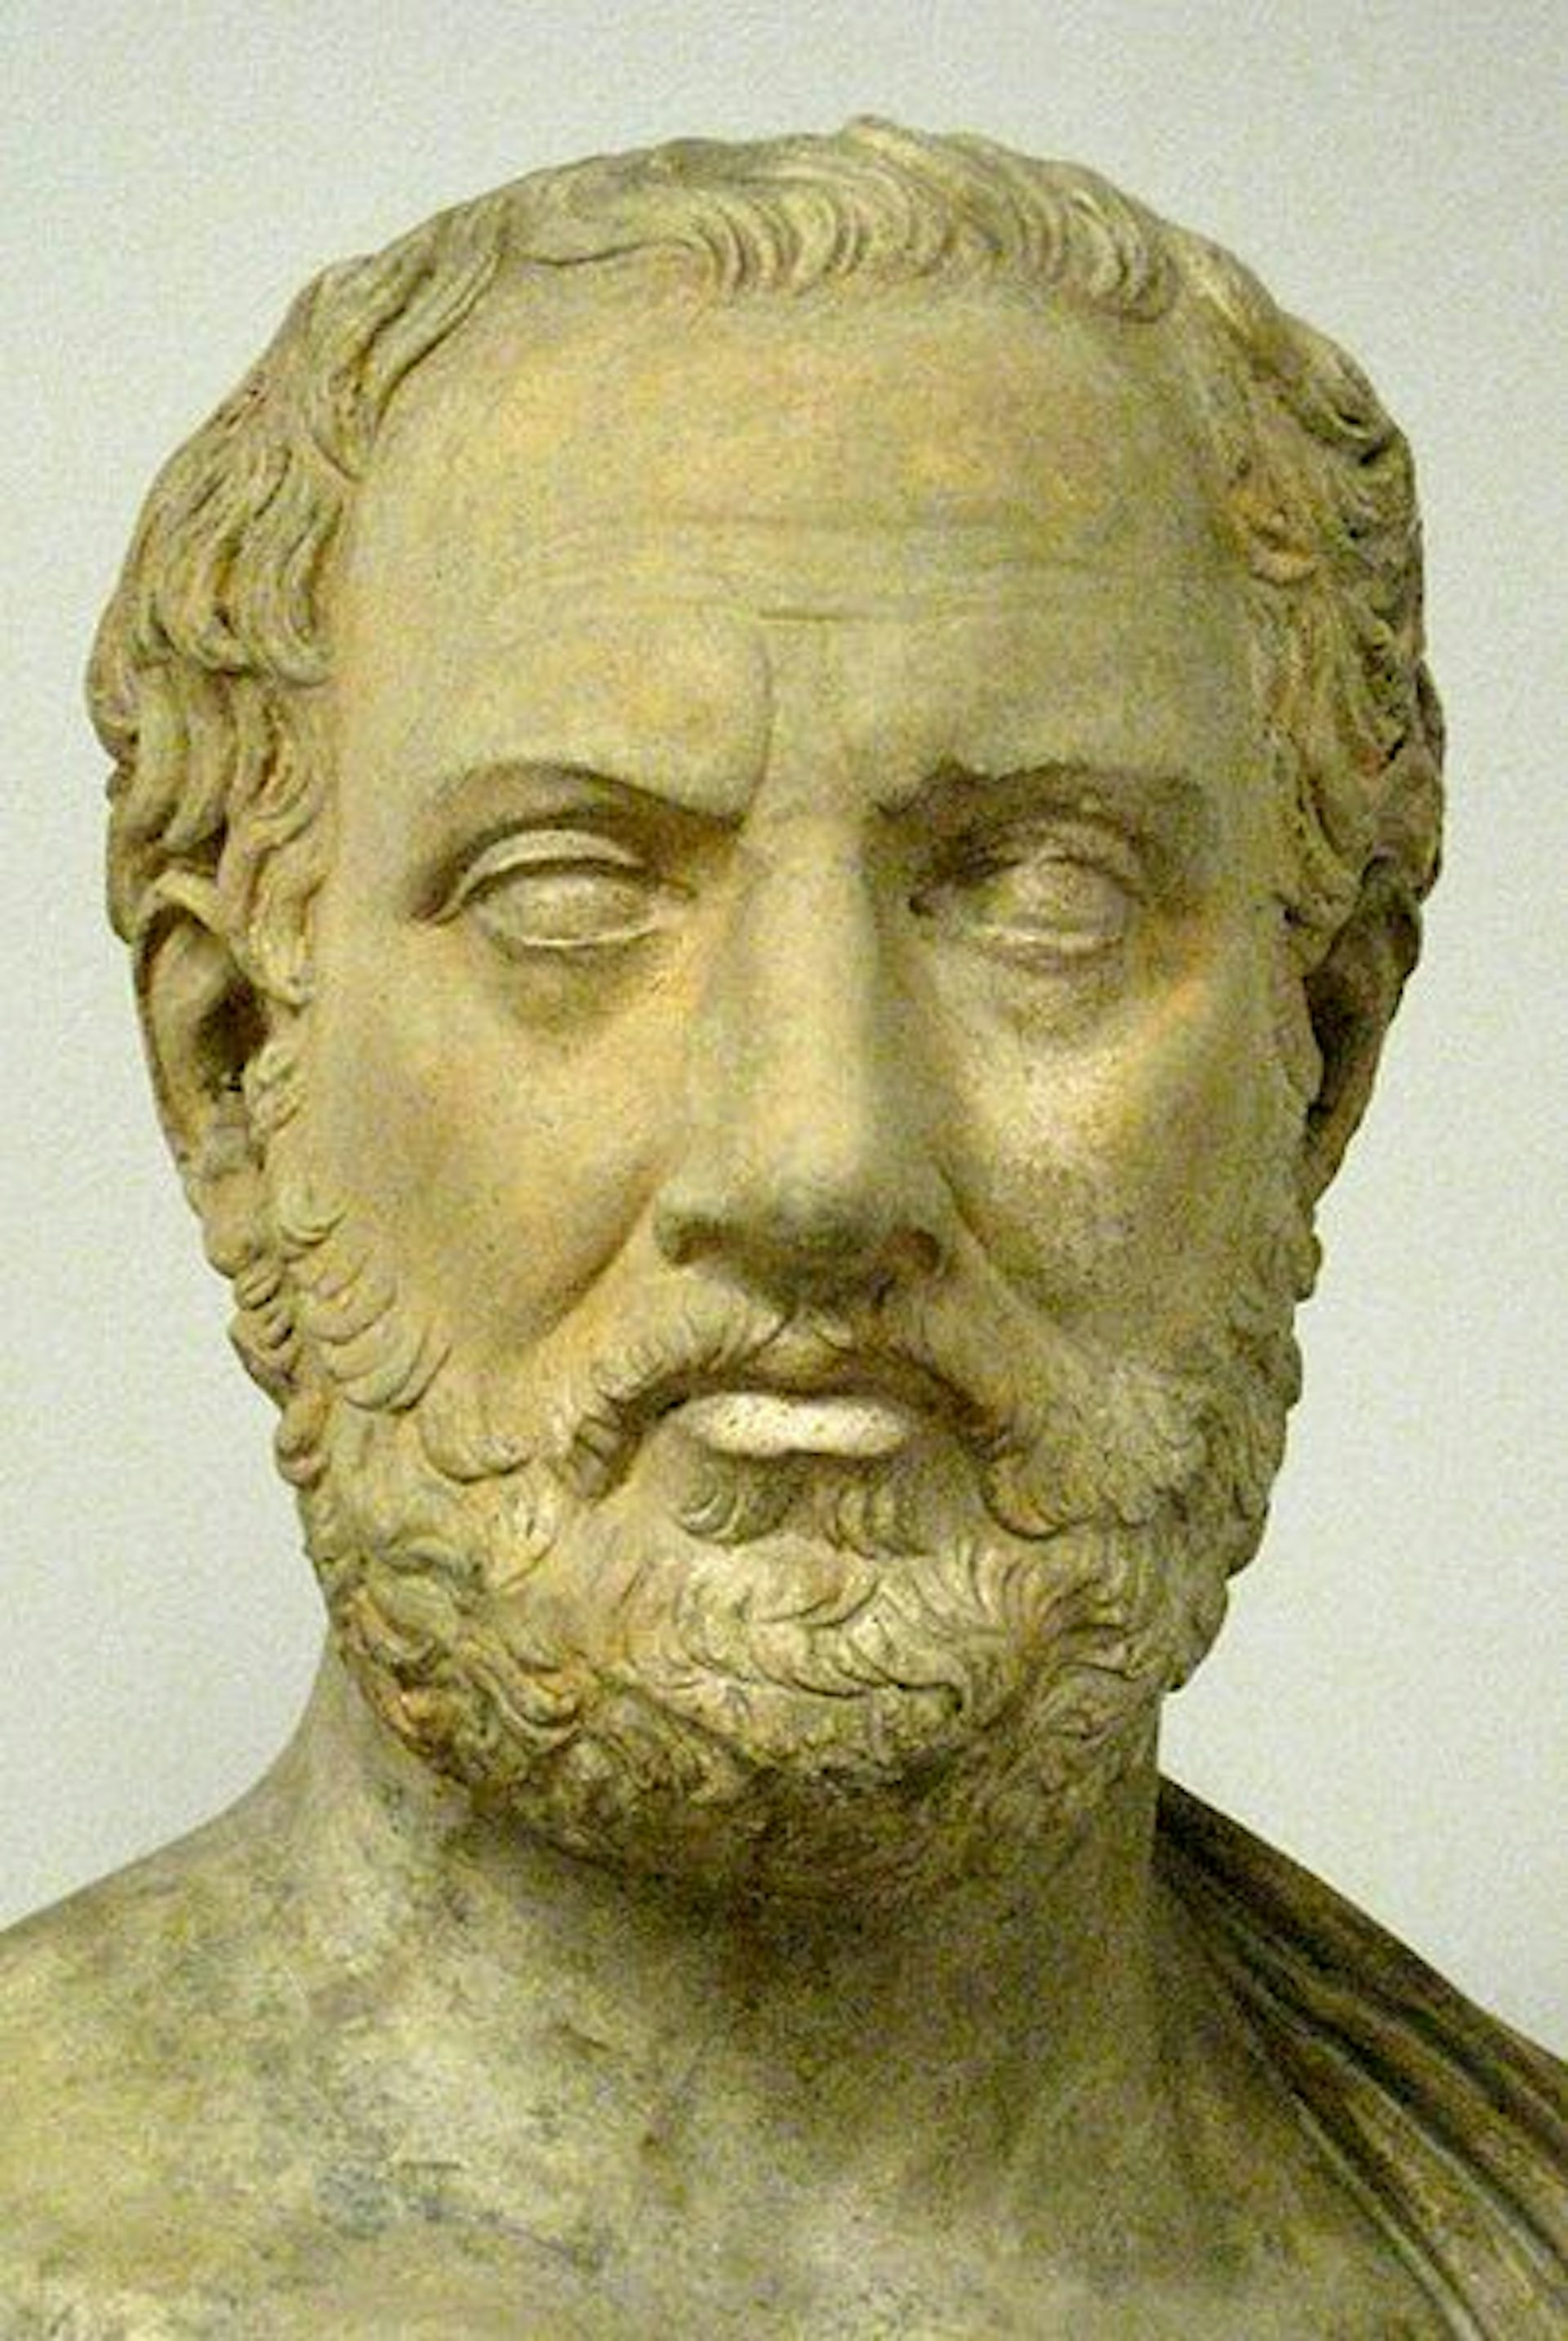 thucydides peloponnesian war